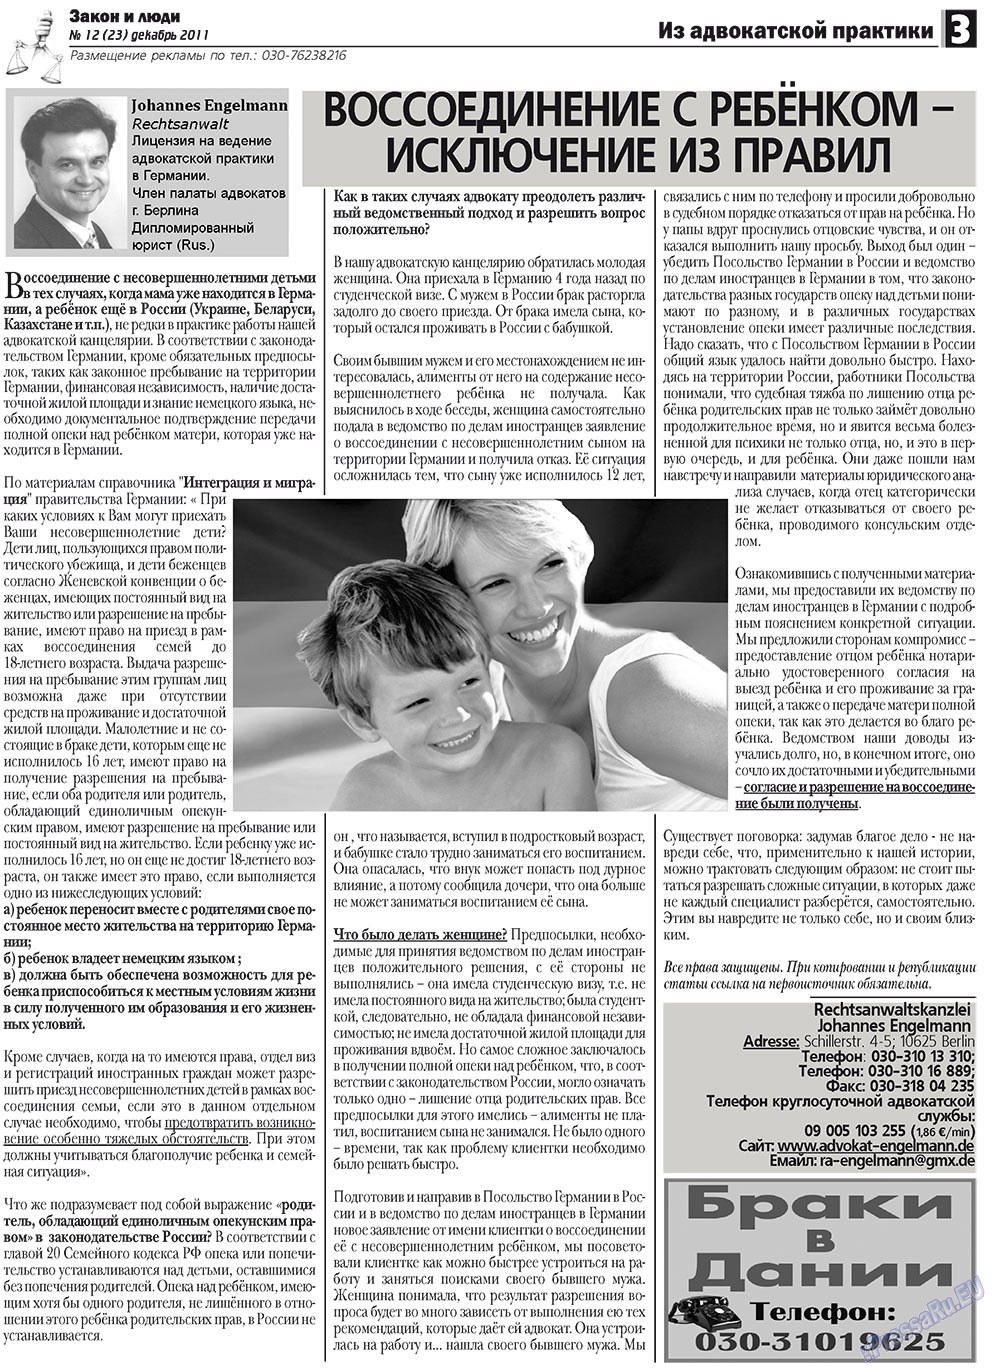 Закон и люди, газета. 2011 №12 стр.3